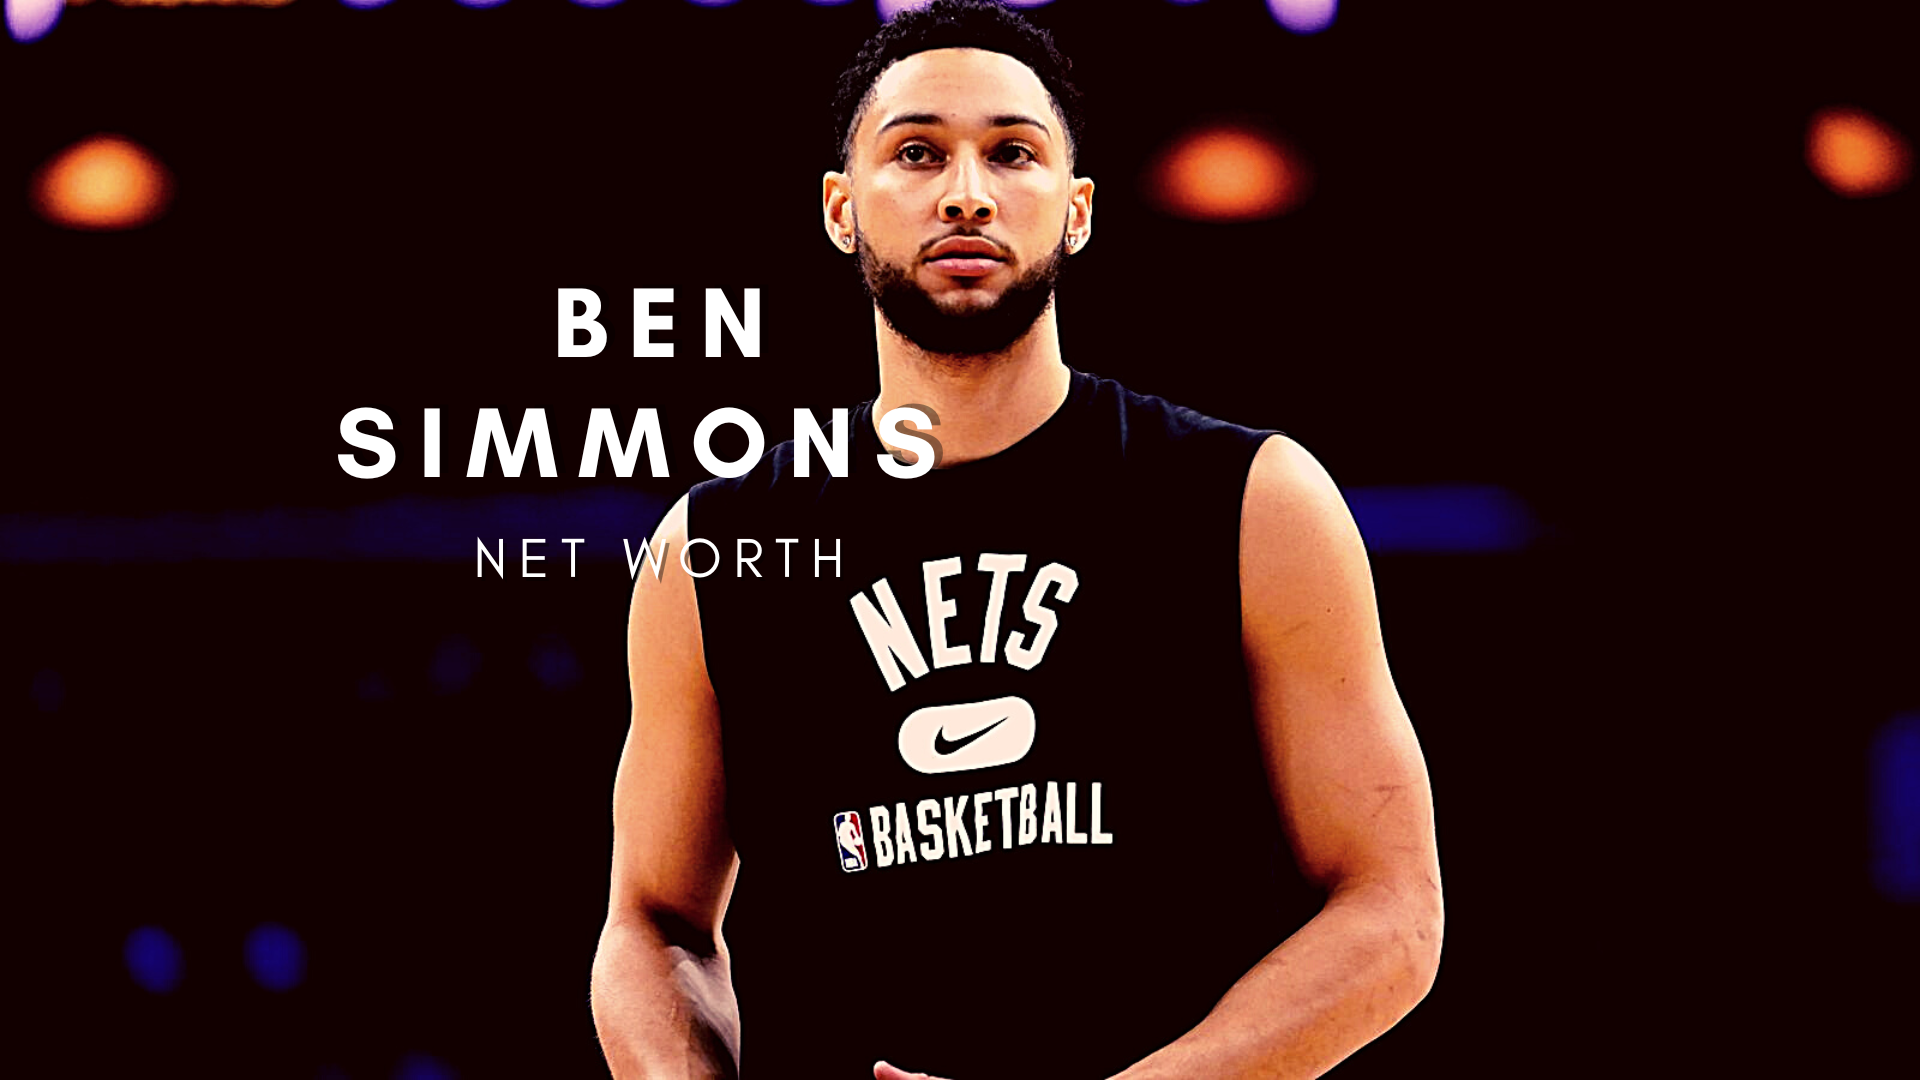 Ben Simmons Net Worth